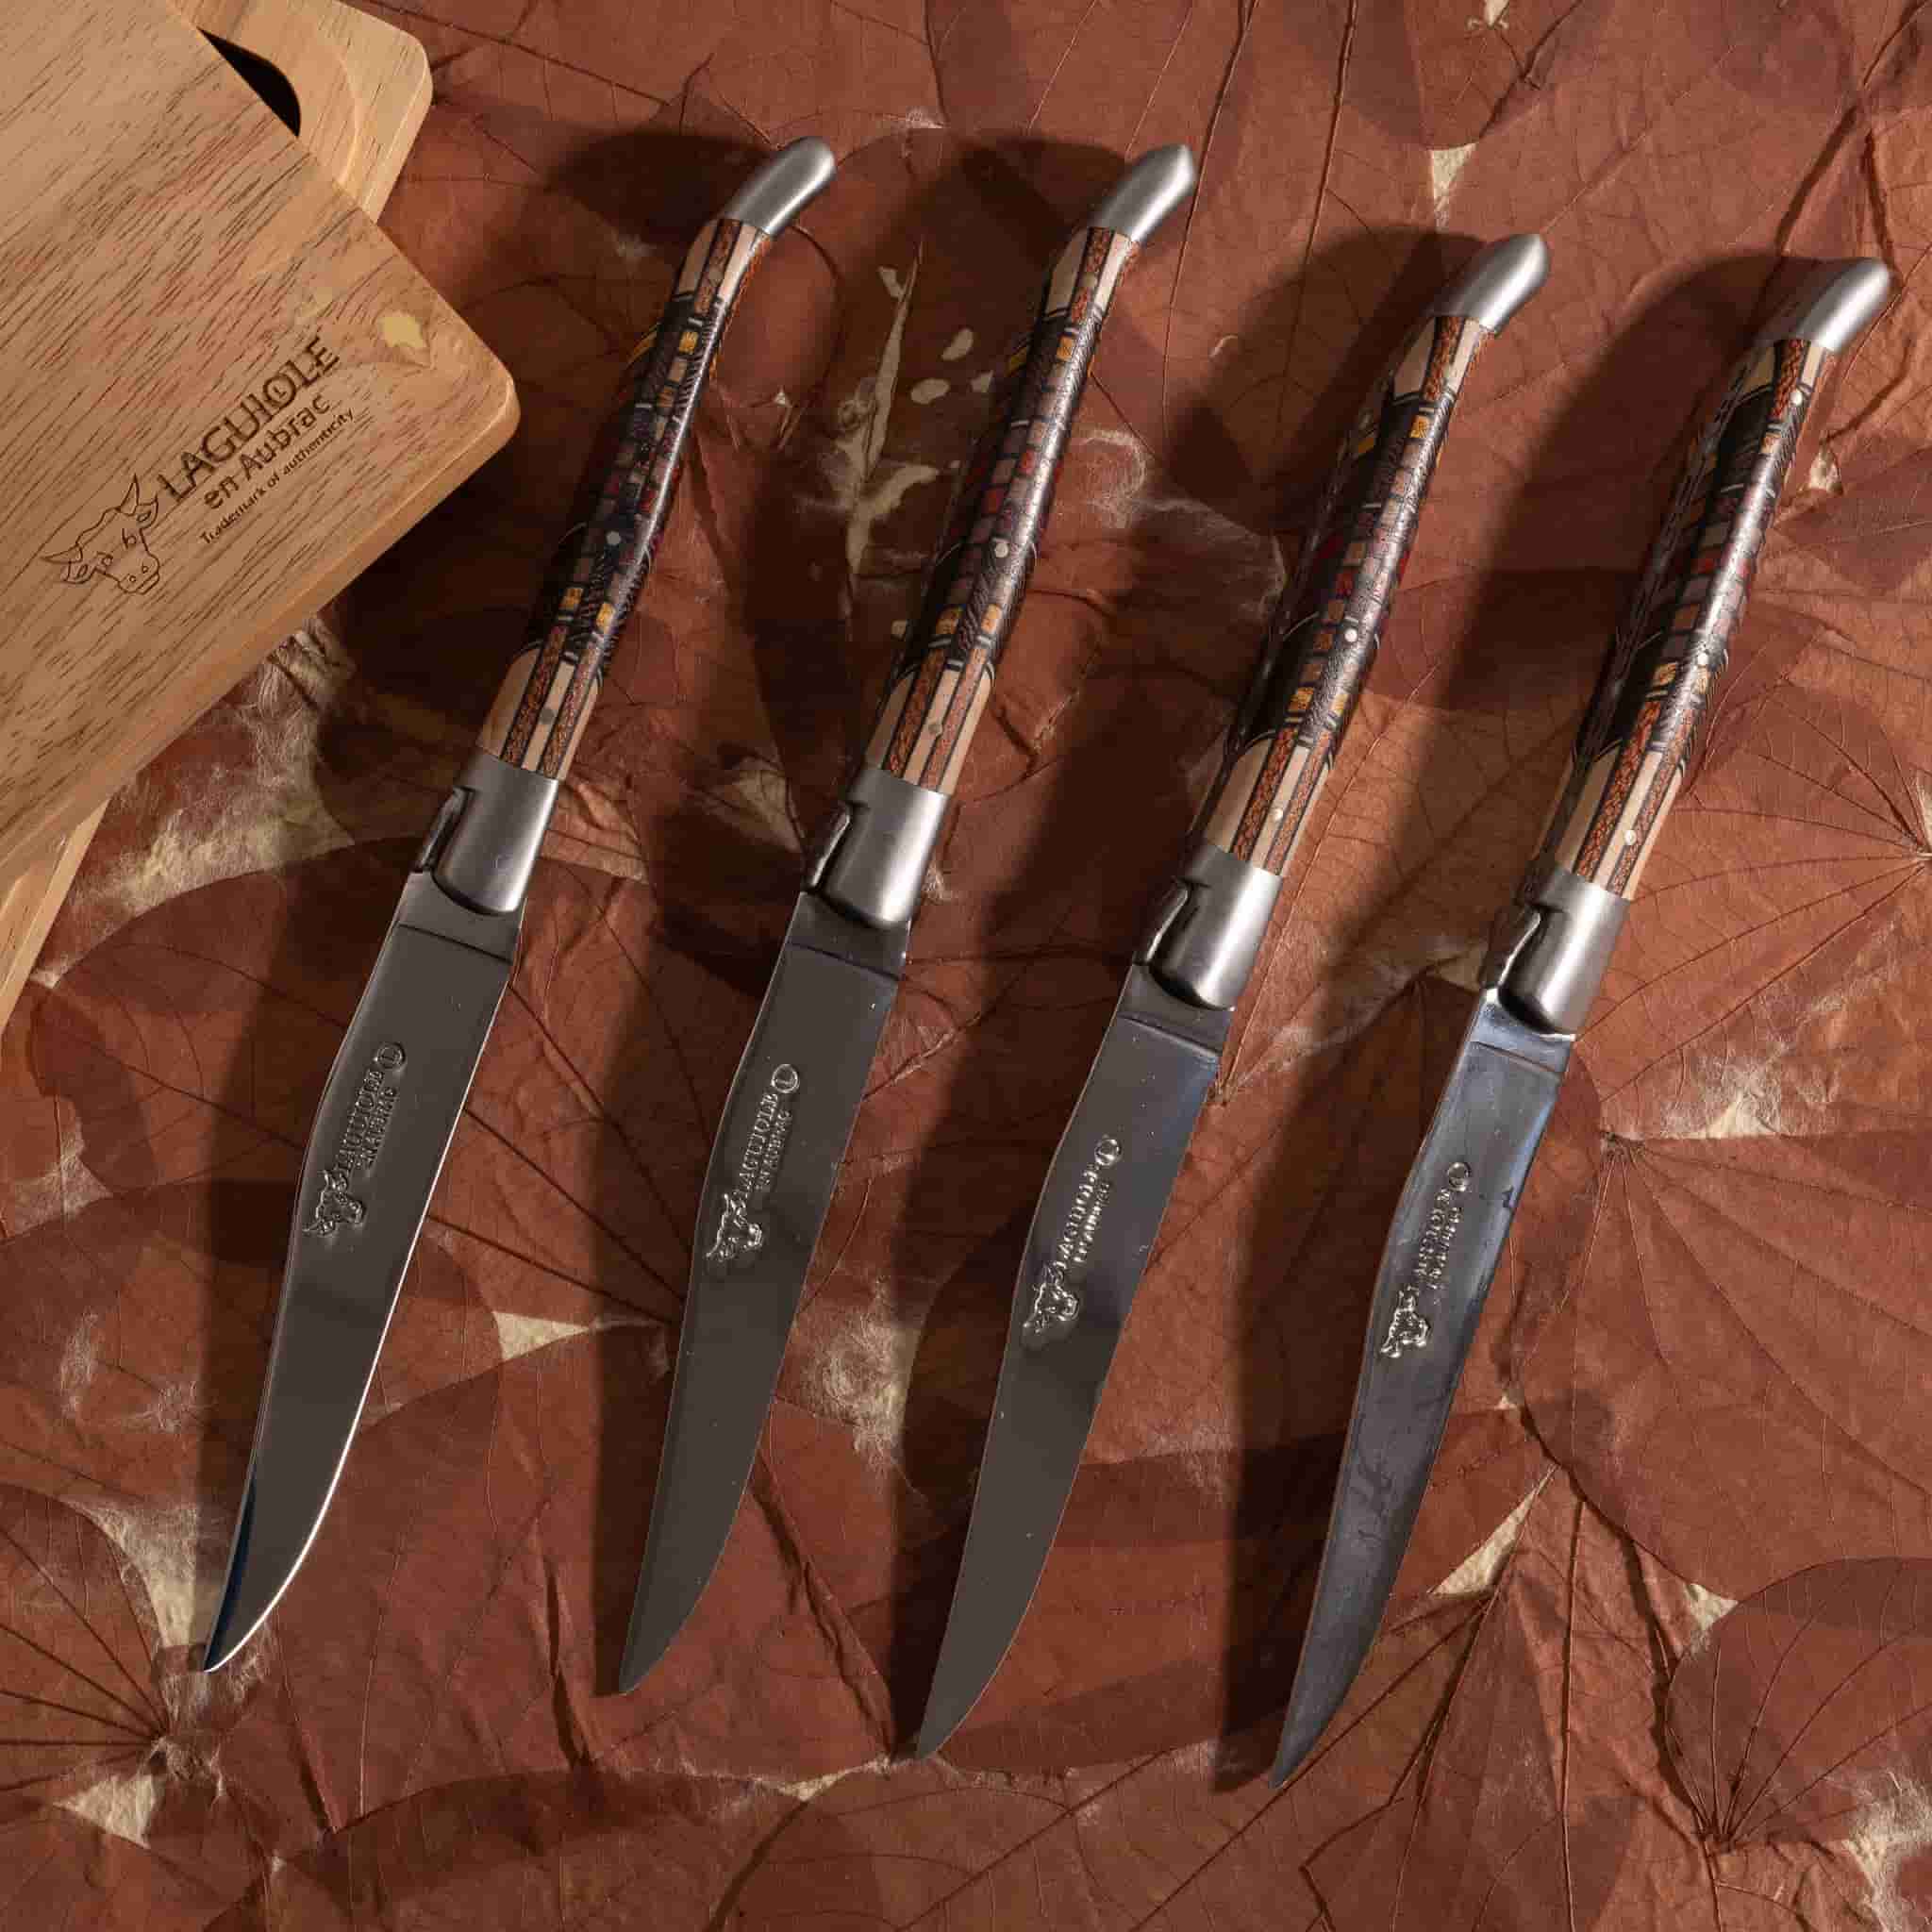 Laguiole en Aubrac Set of 4 Steak Knives, Geometric Wood